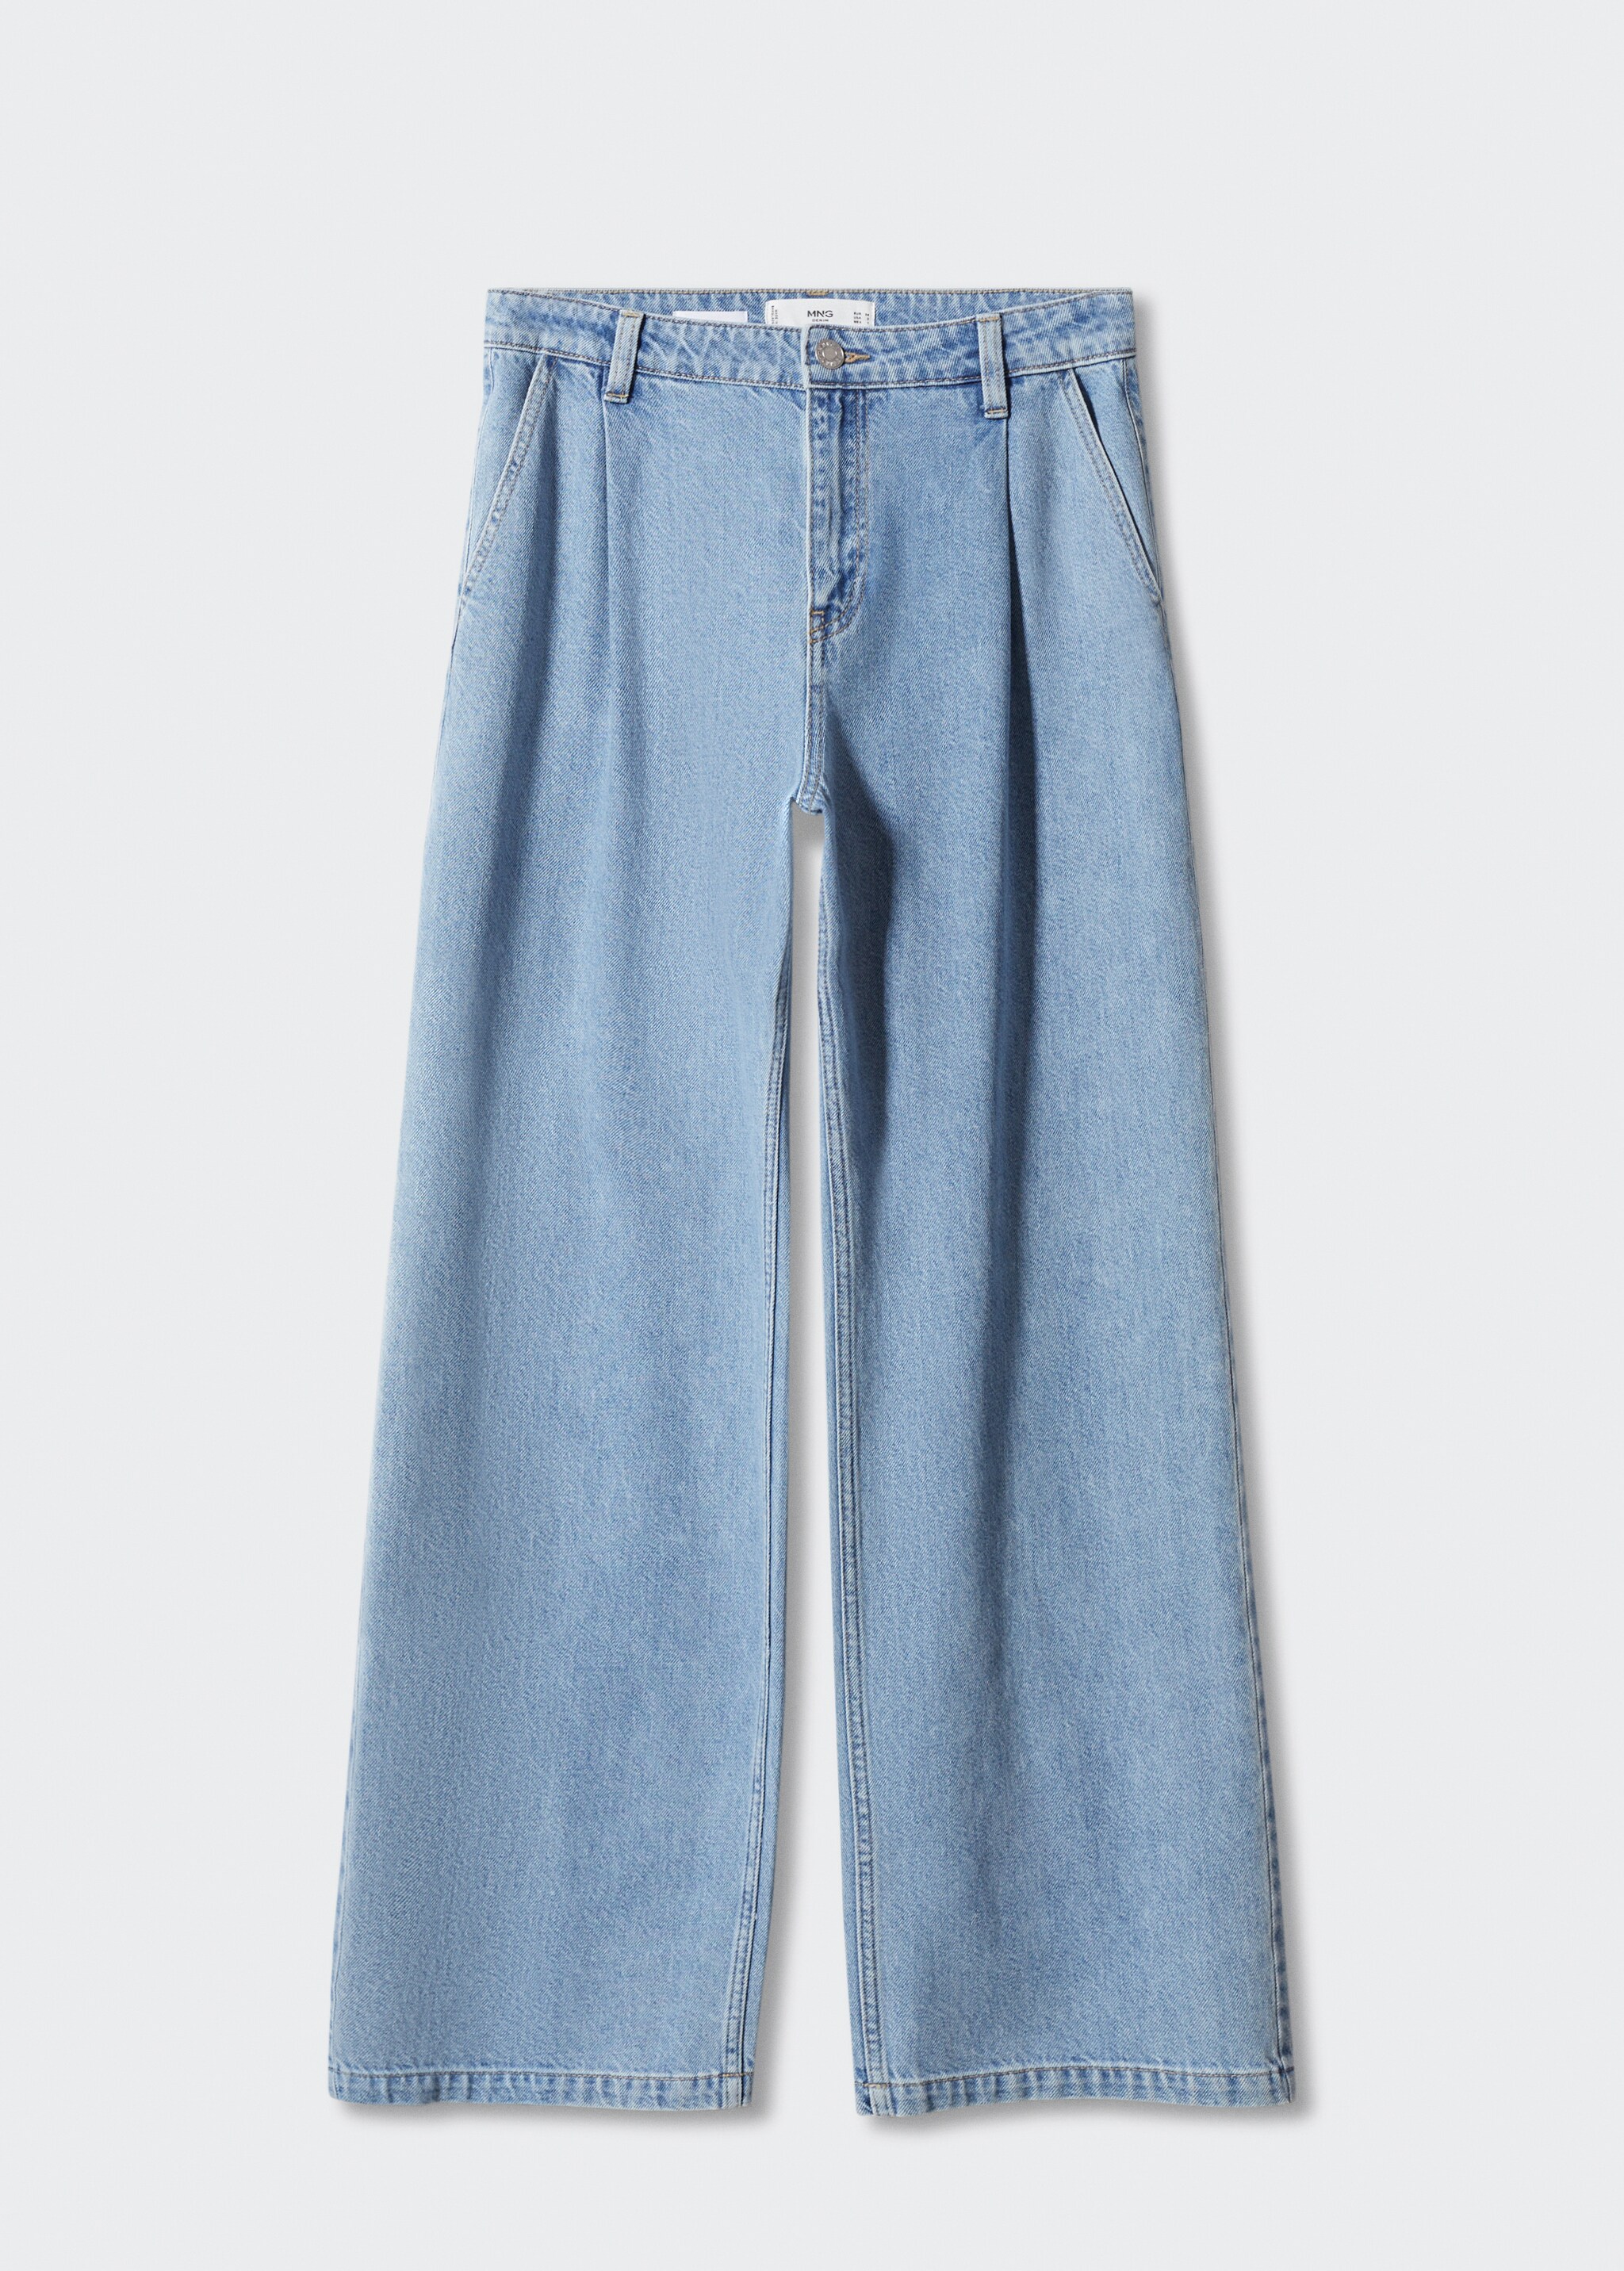 Прямые джинсы с защипами - Изделие без модели